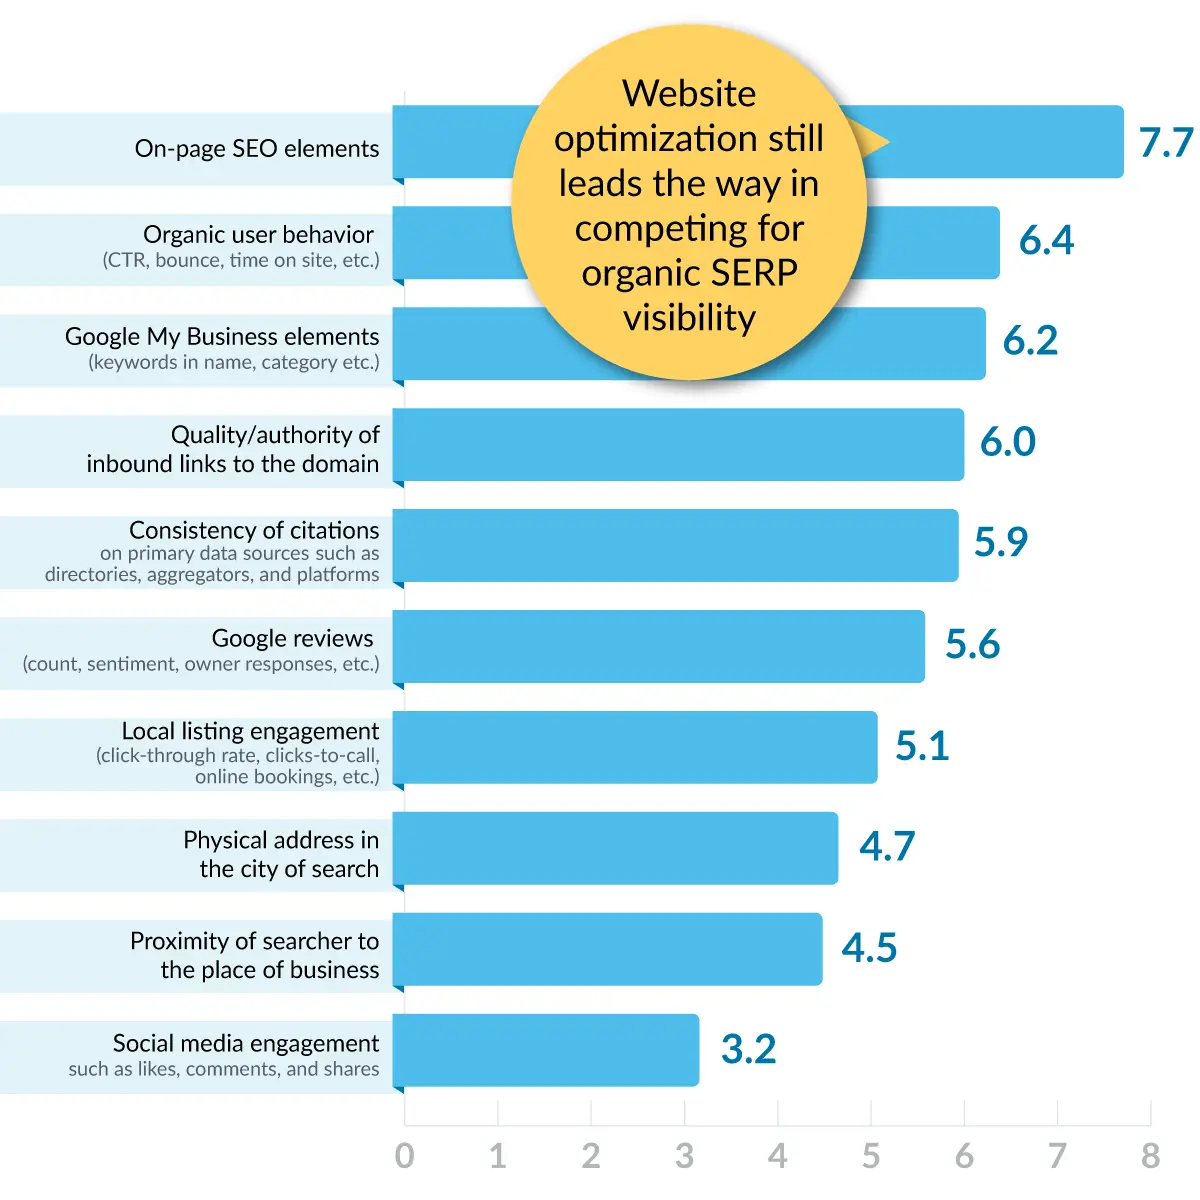 Die Top-Rankingfaktoren für die lokale Google Suche laut der Moz Studie